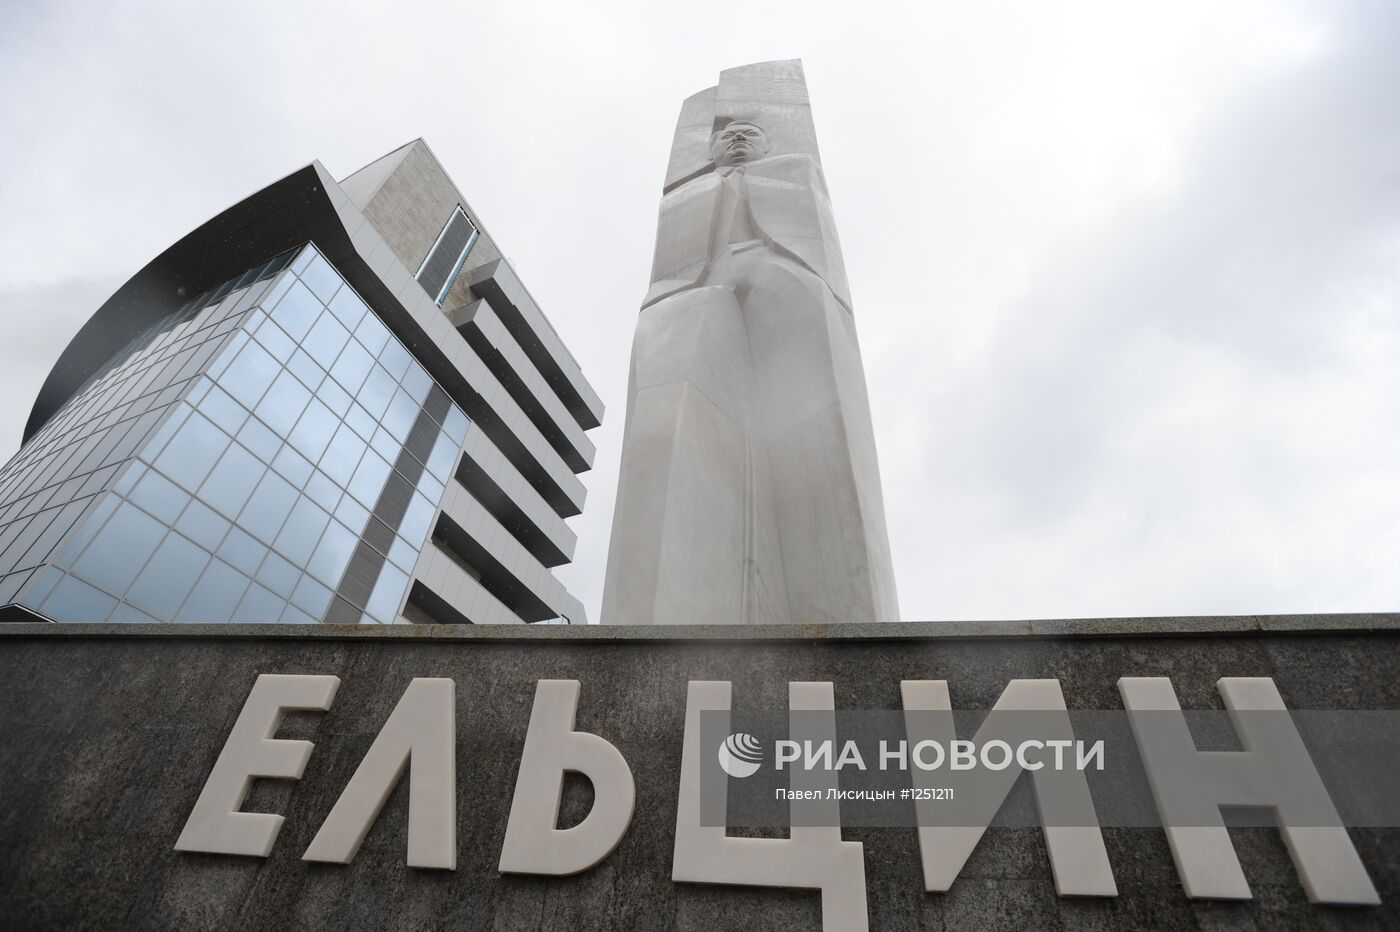 Памятник Ельцину восстановлен в Екатеринбурге